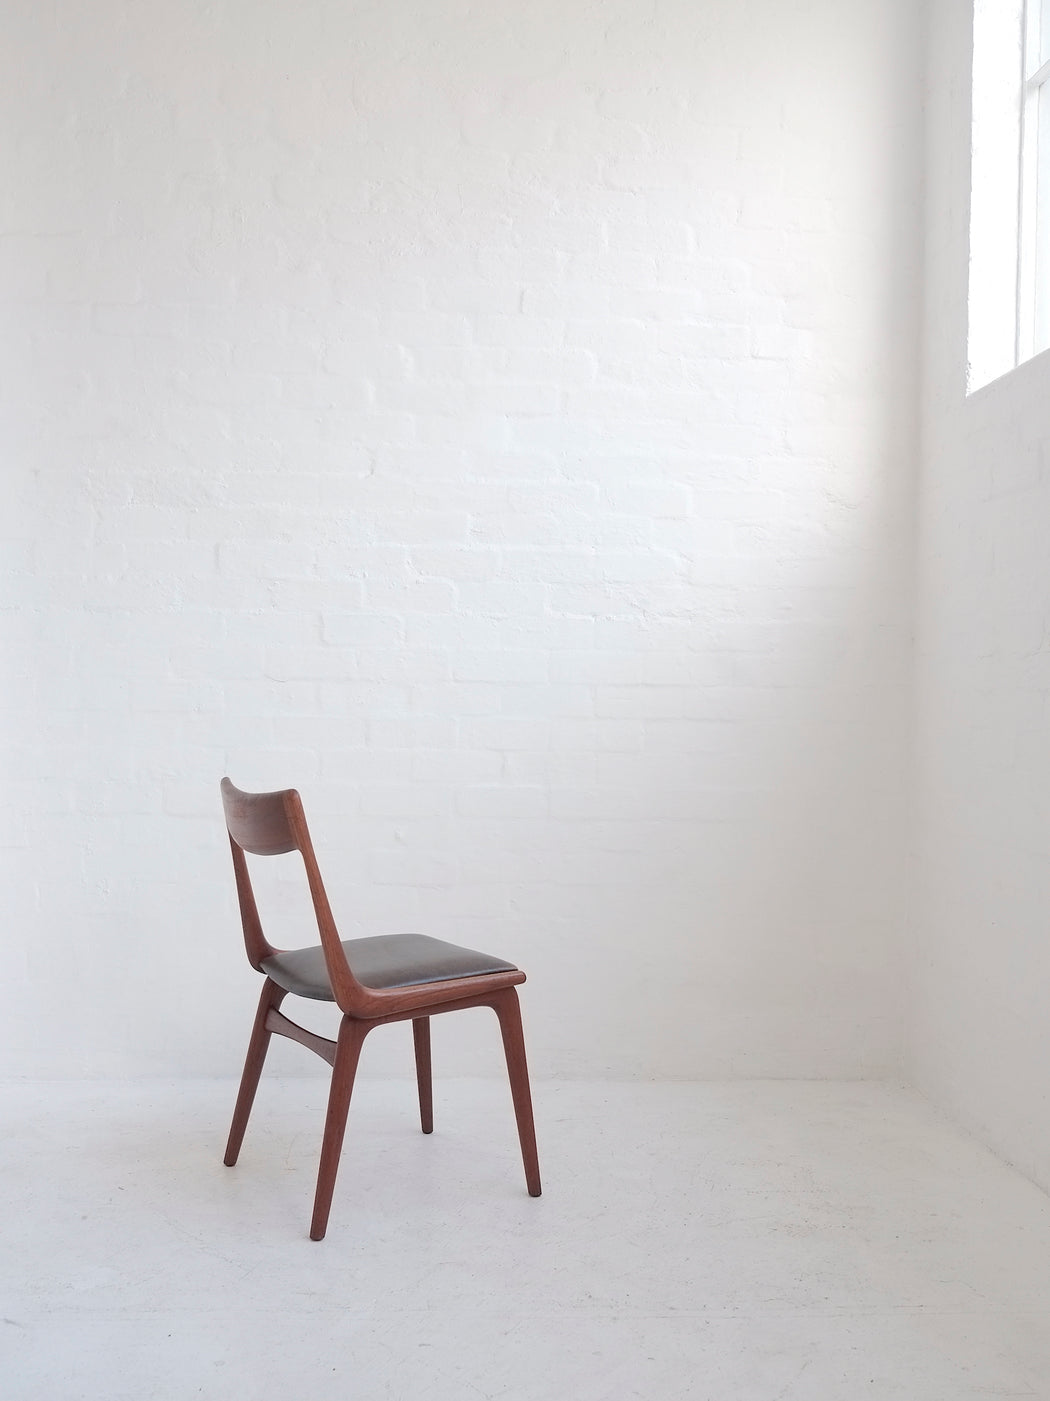 Alfred Christensen 'Boomerang' Chair